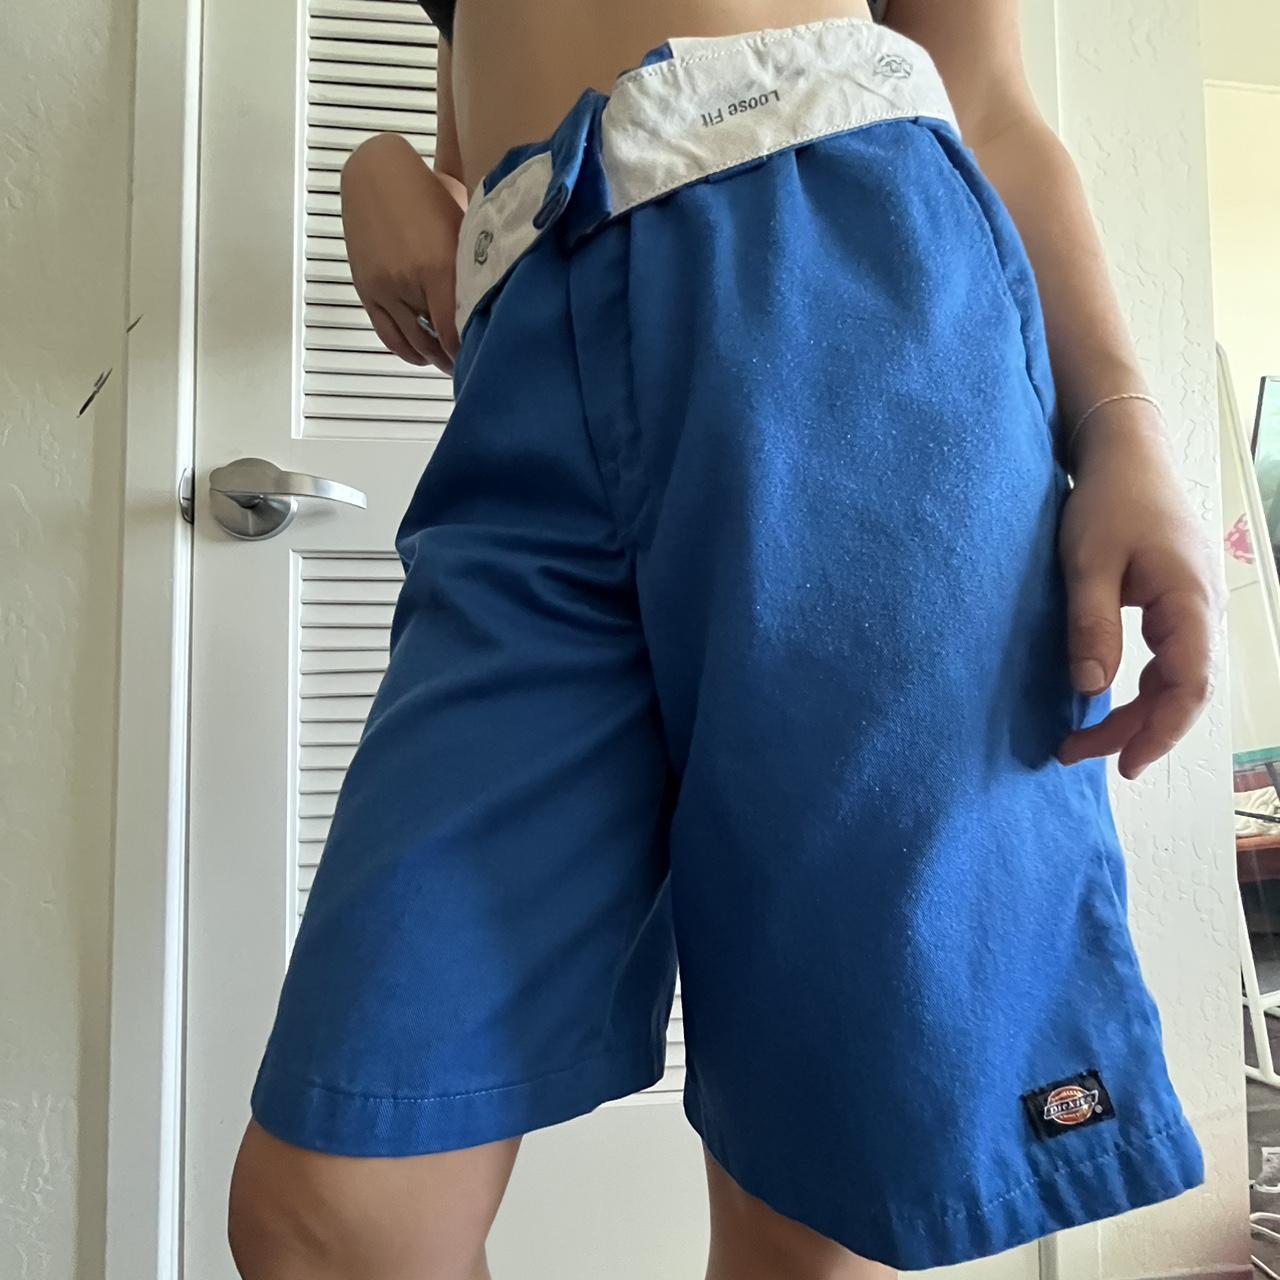 Blue men’s dickies shorts! Size 34-36 waist. - Depop